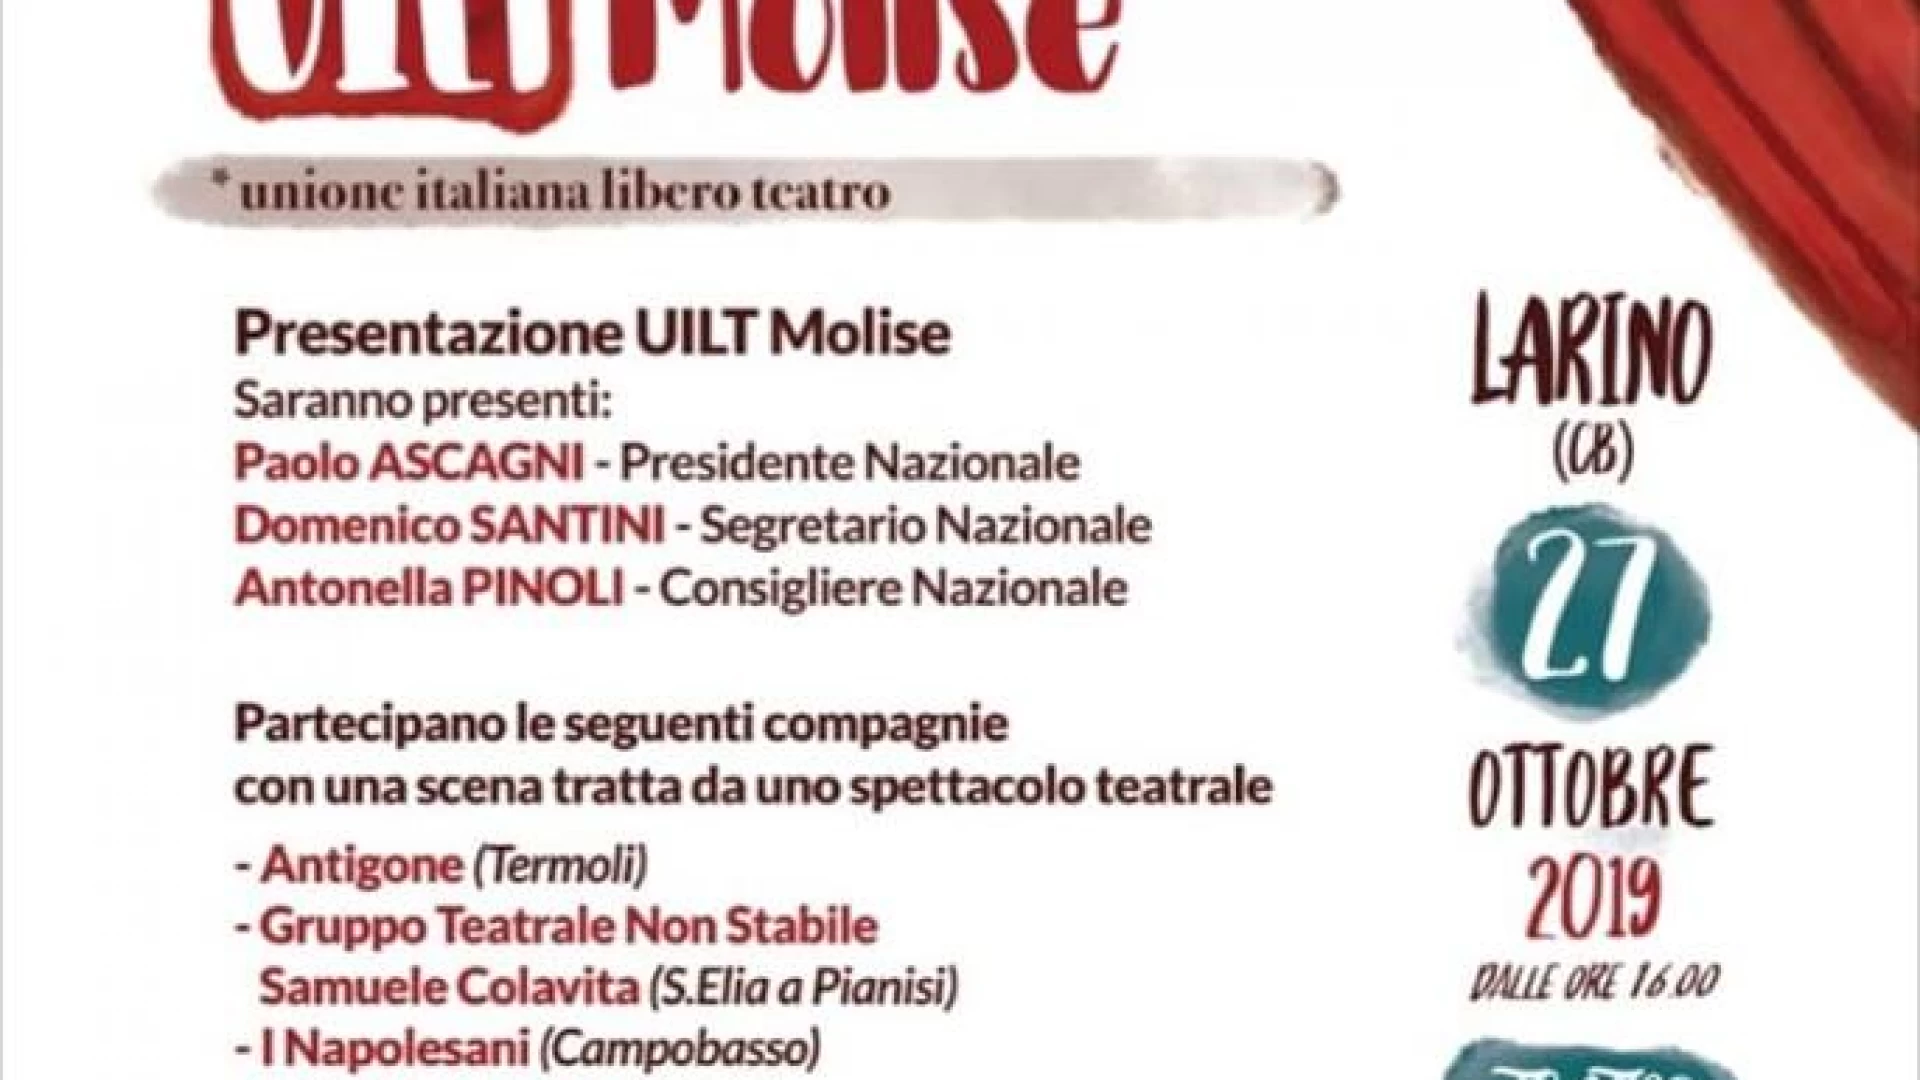 Vetrina Uilt Molise, domenica la presentazione della nuova associazione italiana del libero teatro a Larino.